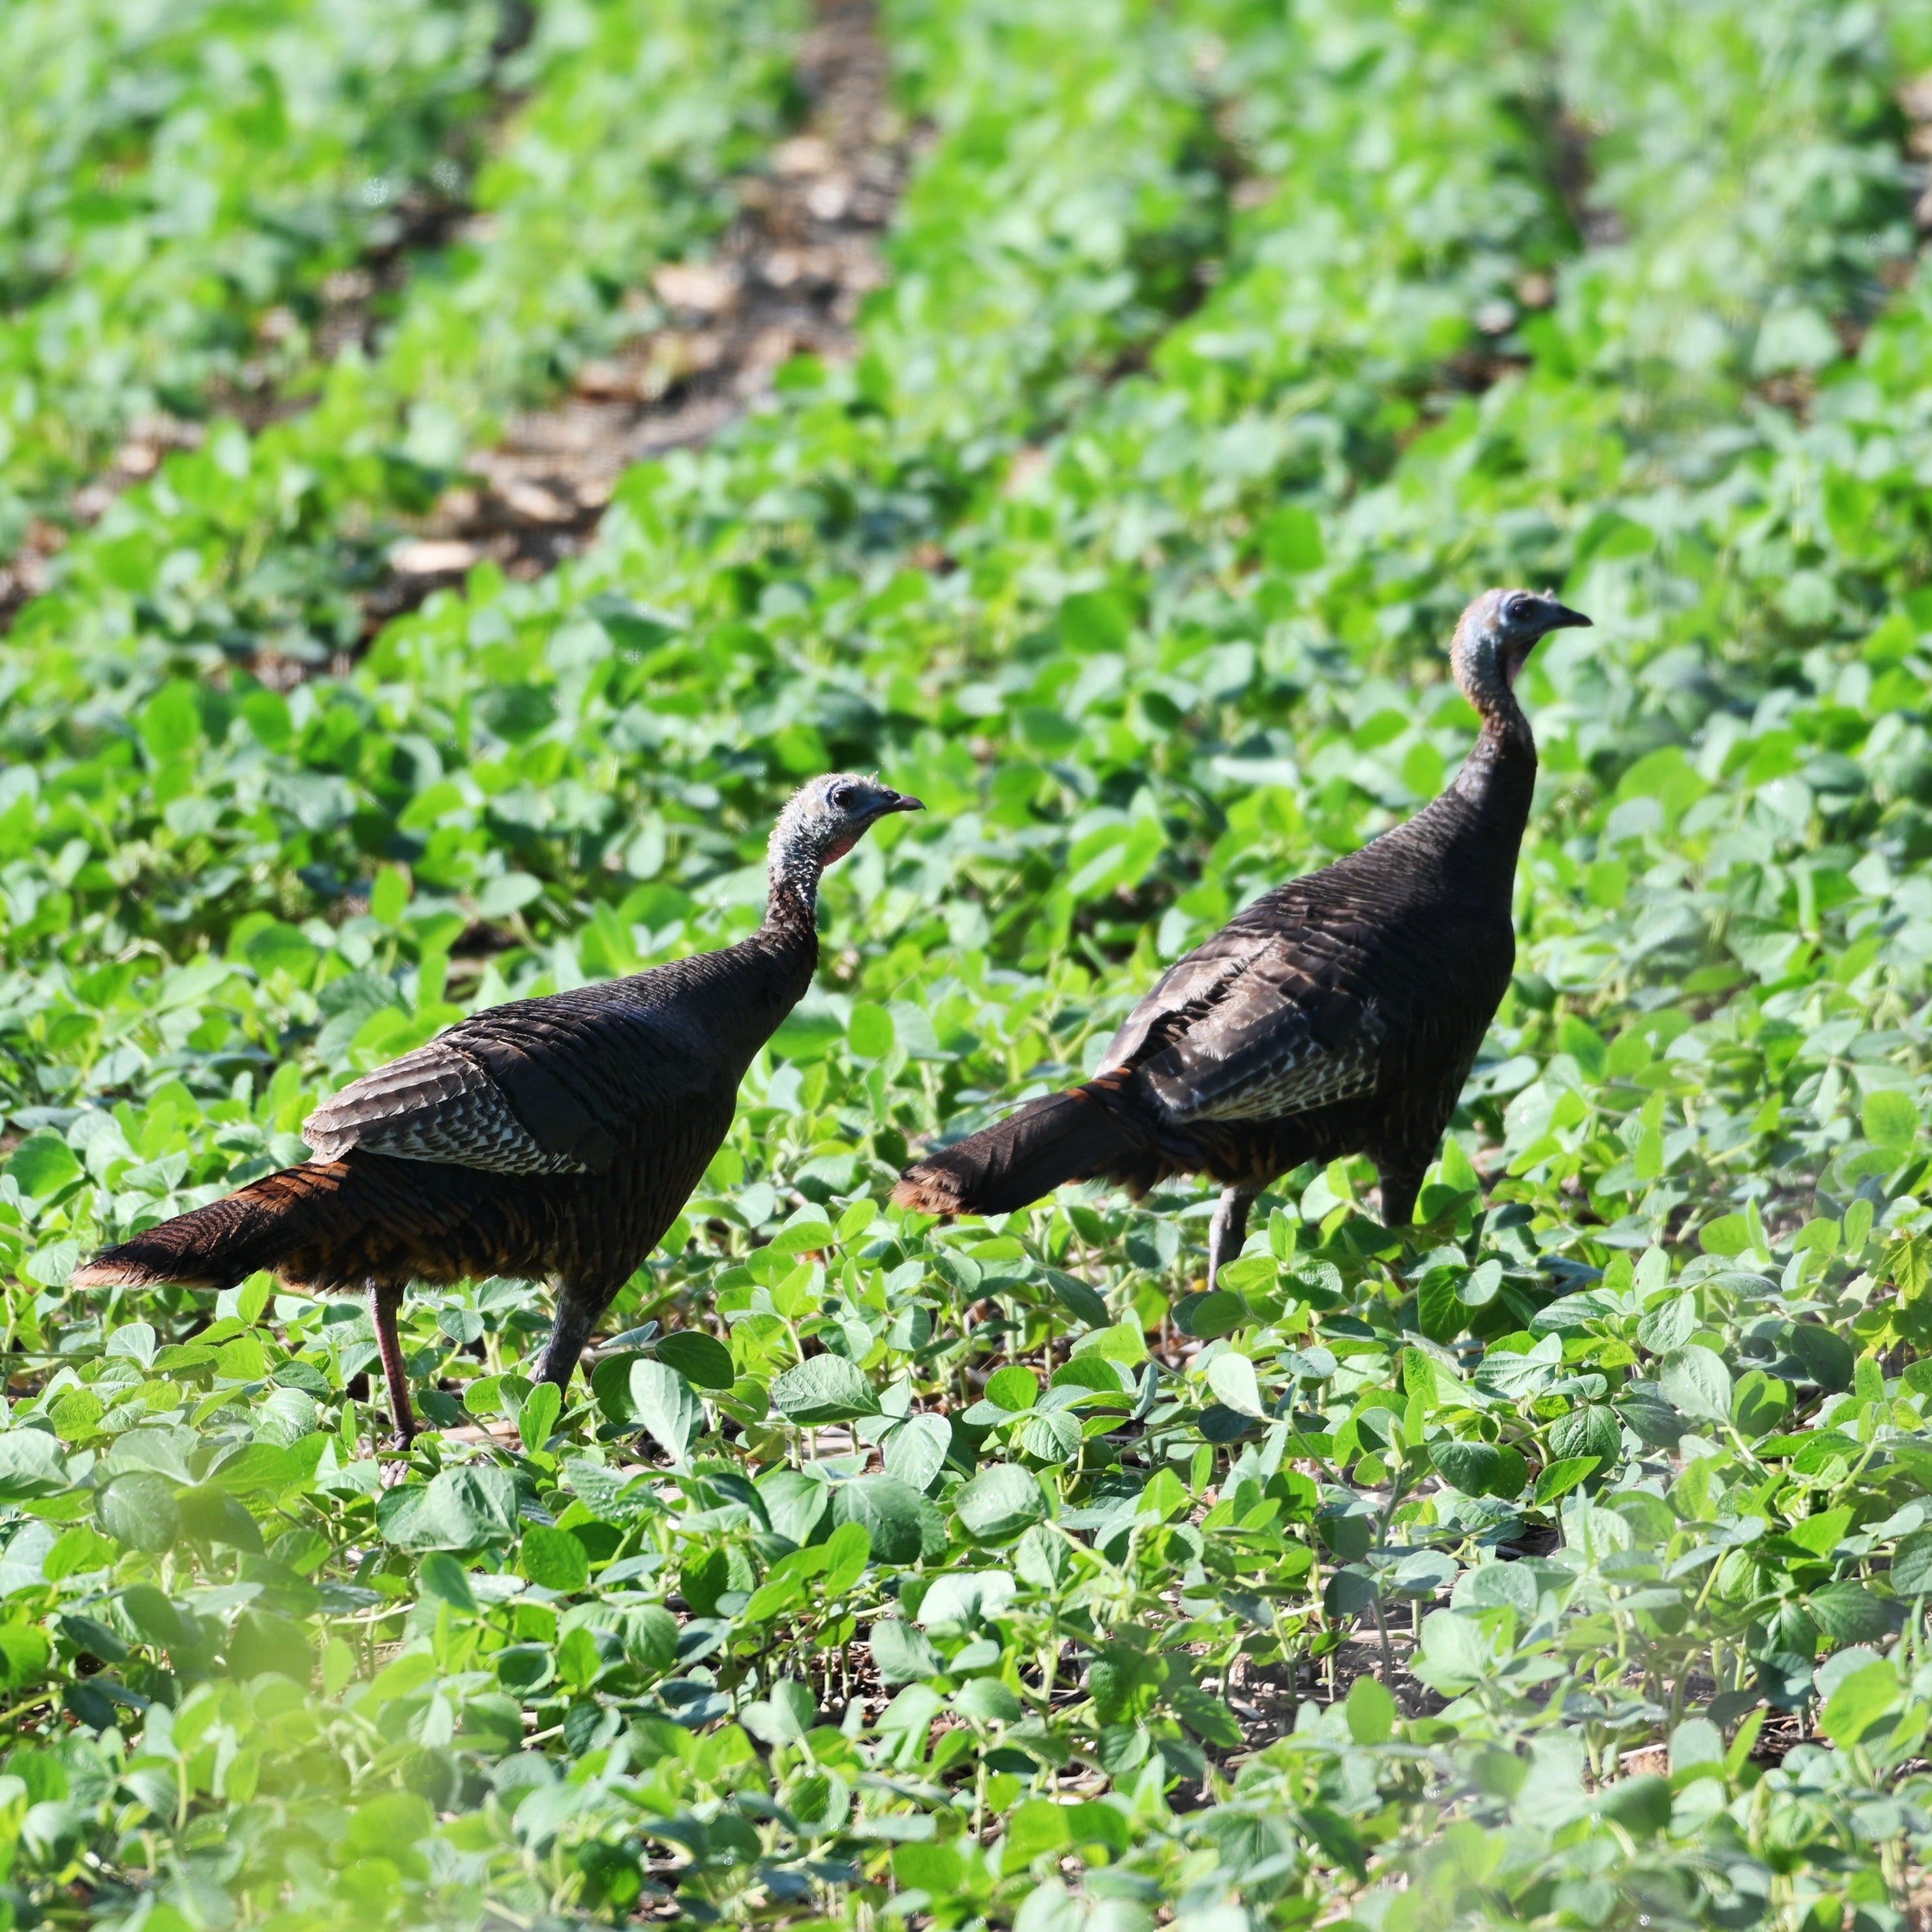 Two Turkeys in Tecomate Glyphosate tolerant soy bean seed field.